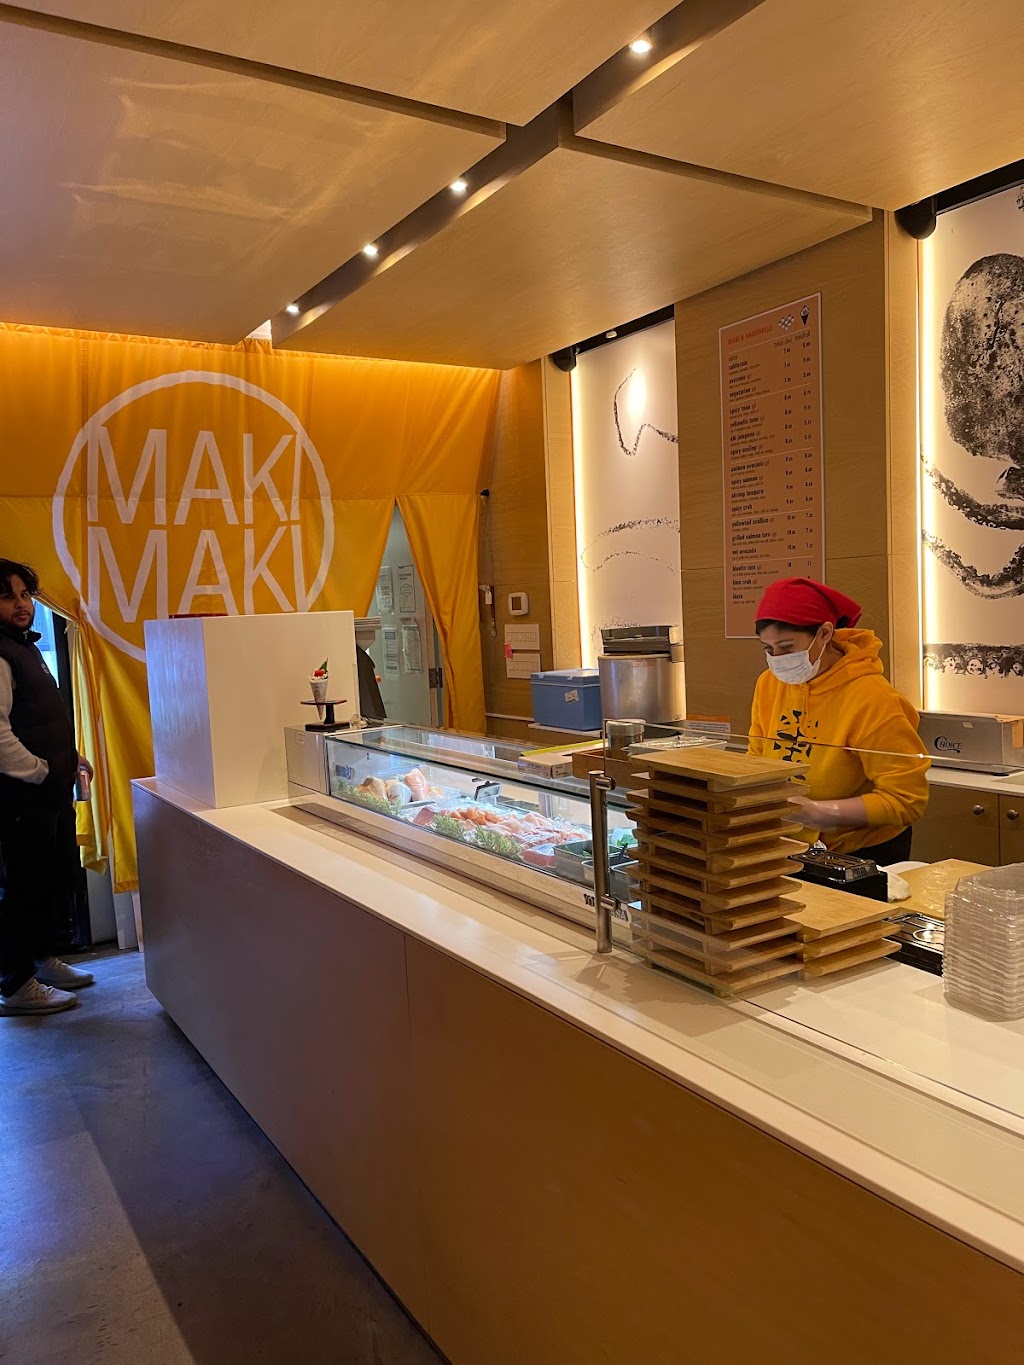 MakiMaki Sushi | restaurant | 1369 6th Ave, New York, NY 10019, USA | 2122454550 OR +1 212-245-4550